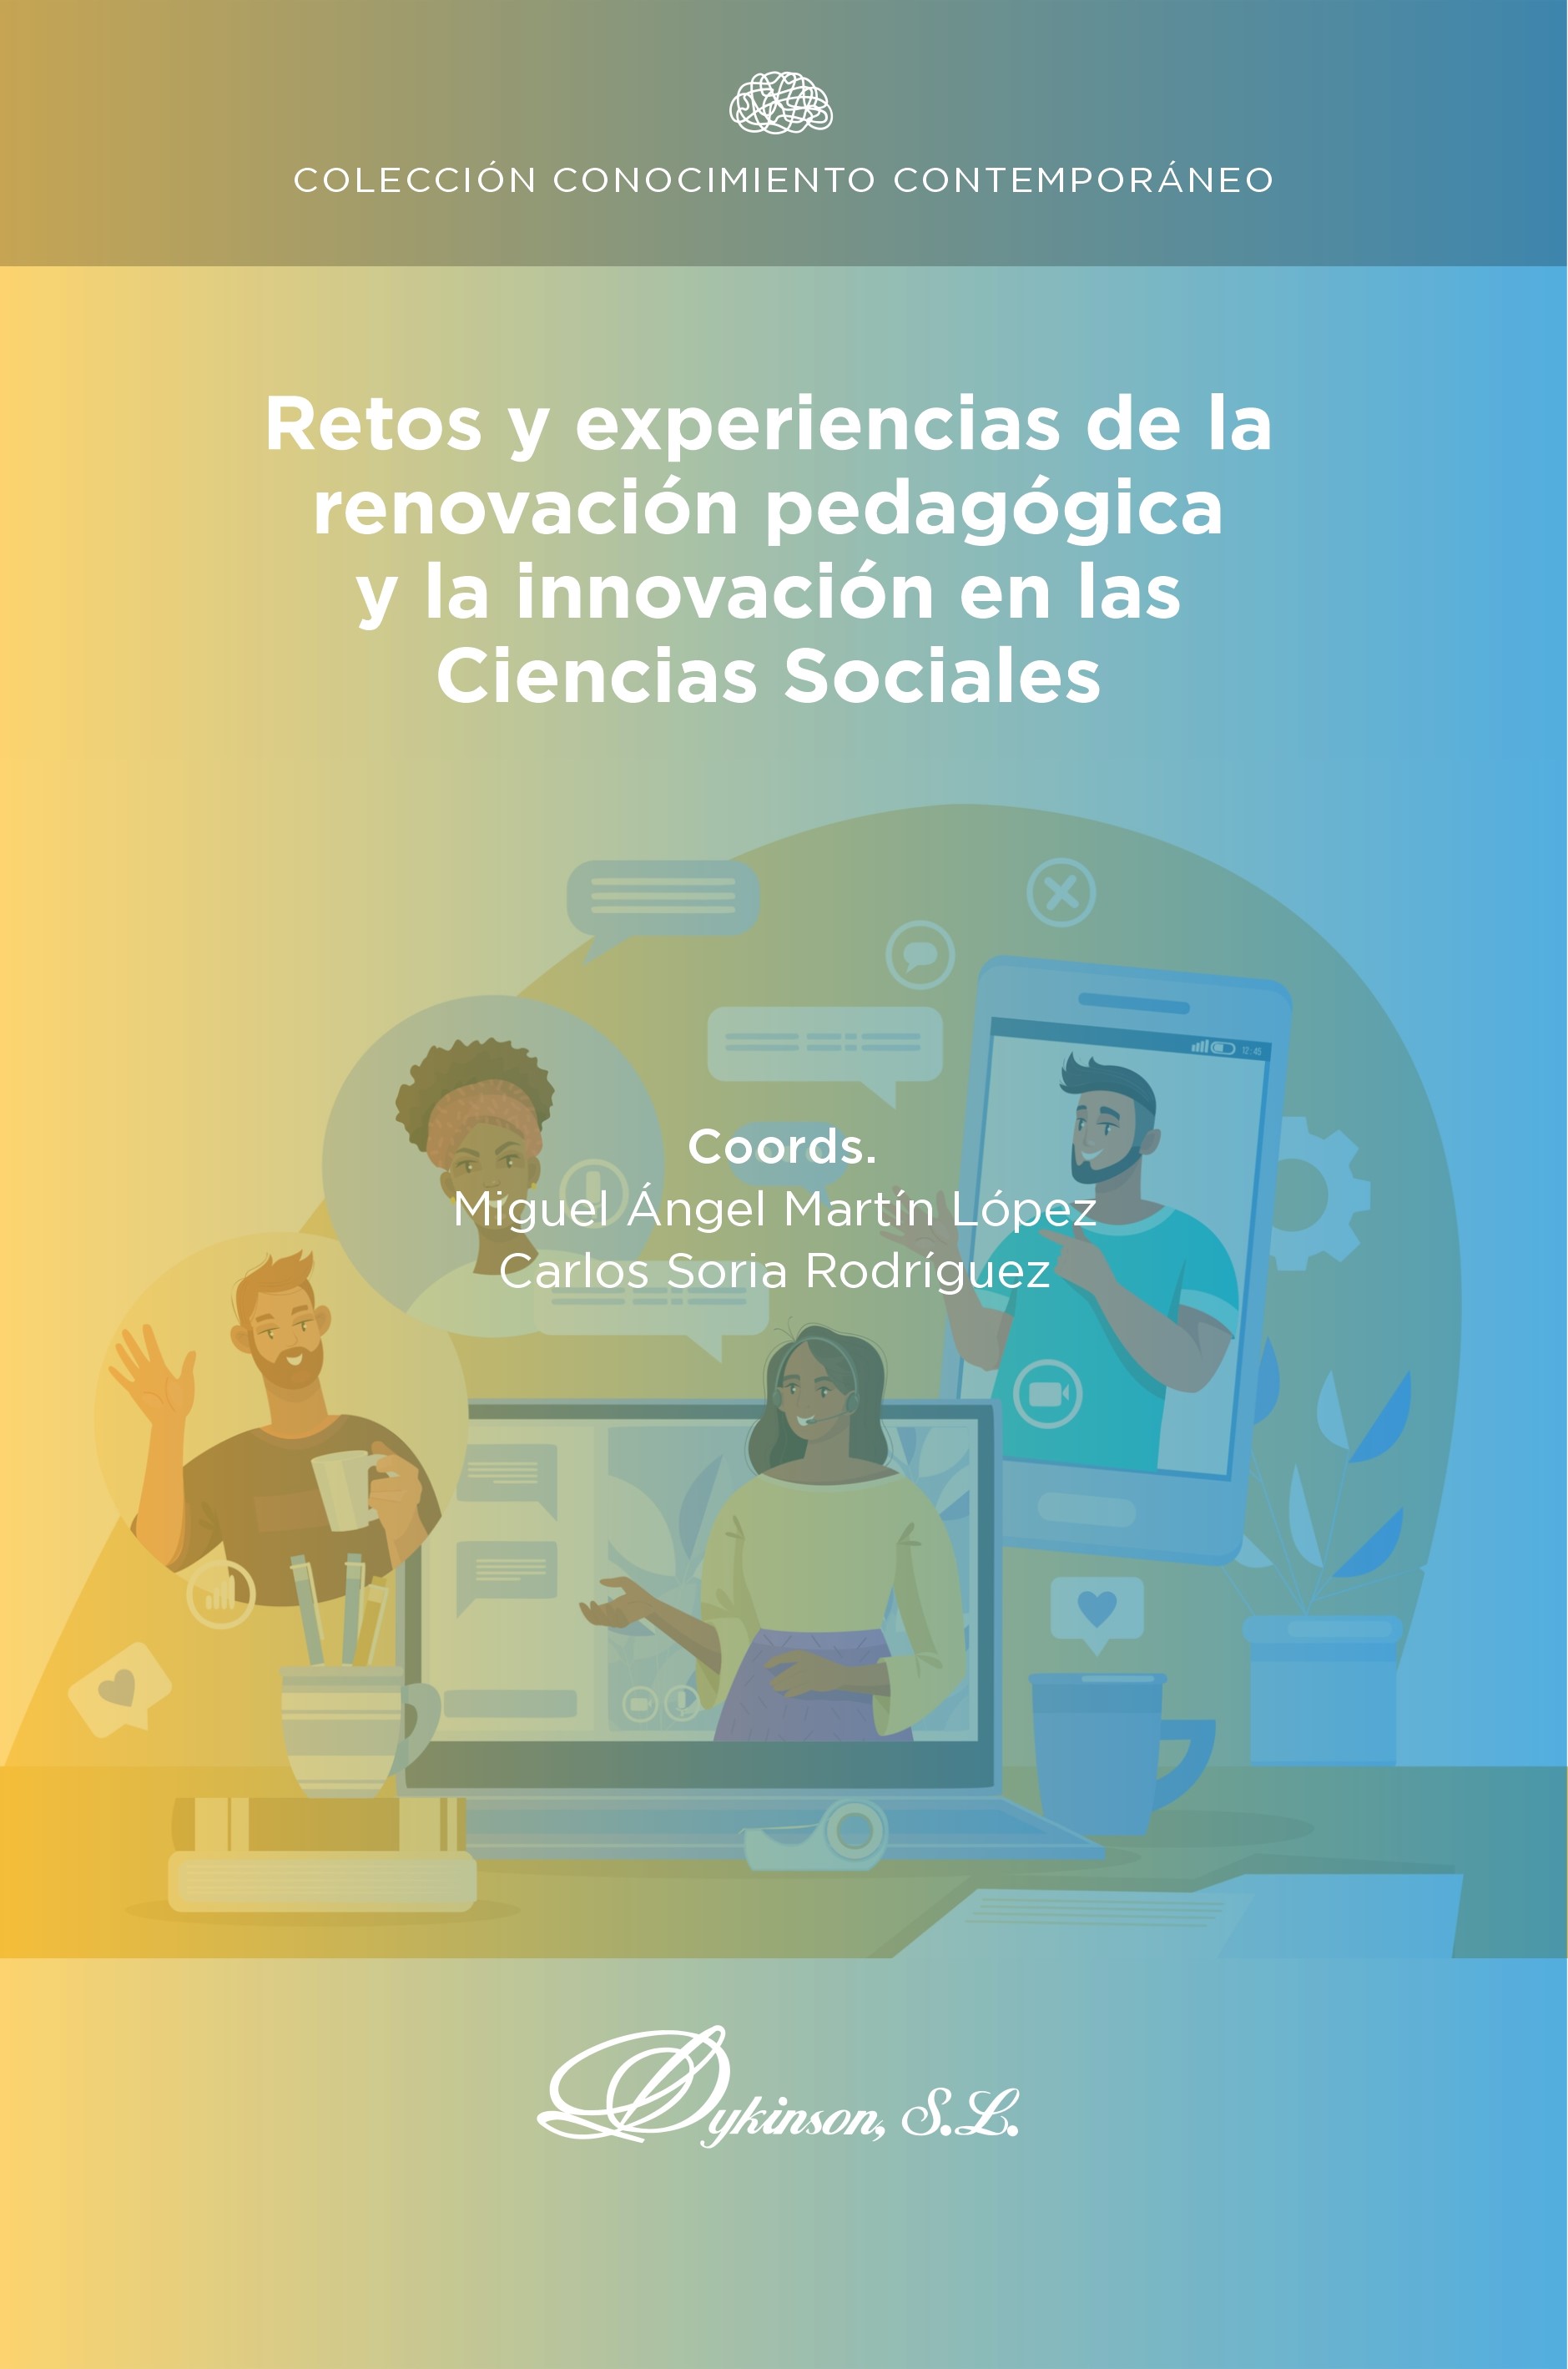 Imagen de portada del libro Retos y experiencias de la renovación pedagógica y la innovación en las ciencias sociales